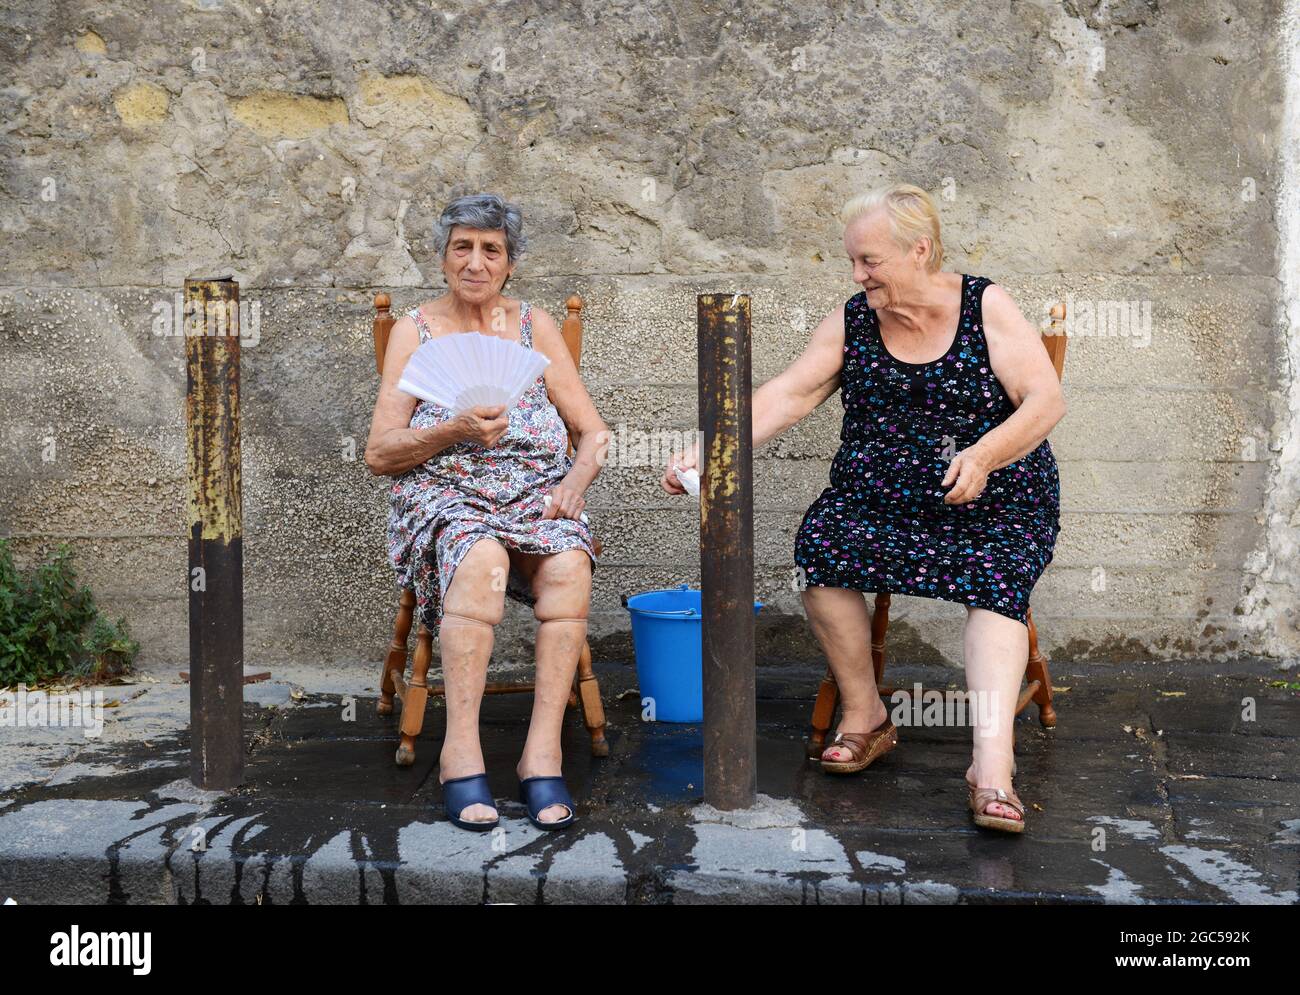 Juli 2015, Neapel Italien. Ältere italienische Frauen sitzen draußen auf der Straße mit einem Eimer Wasser, um bei der sengenden Hitze zu helfen. Stockfoto